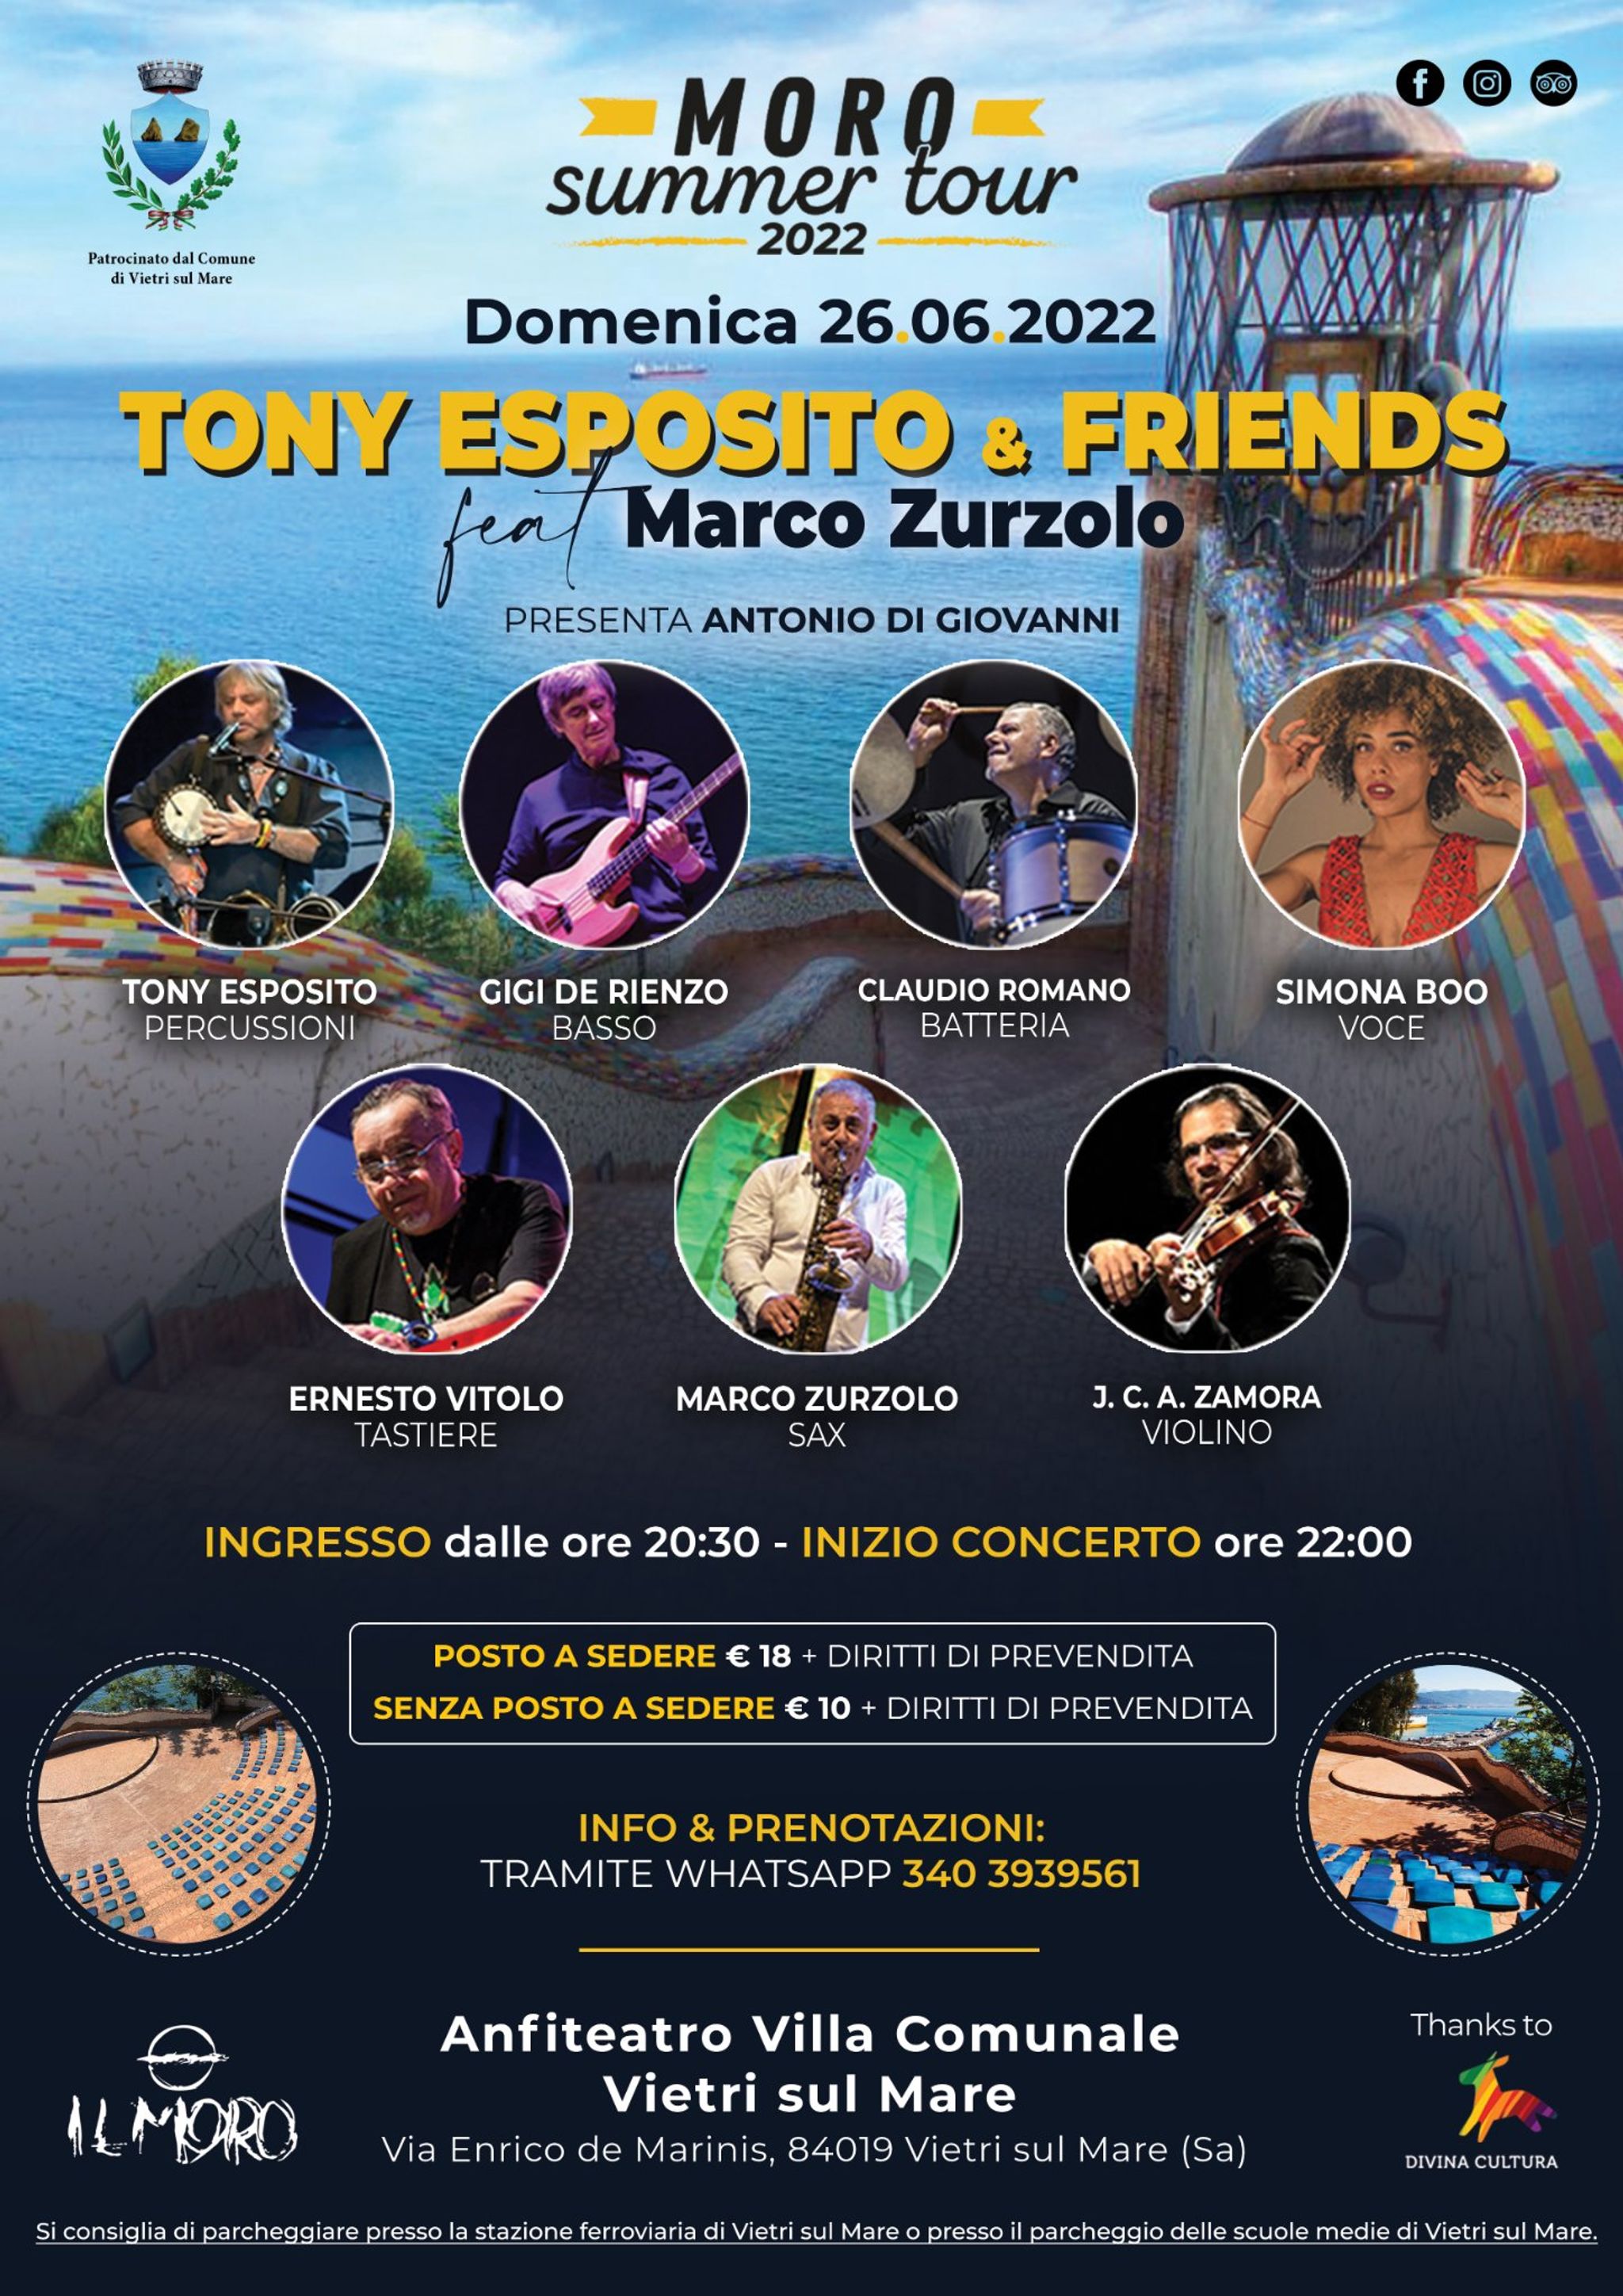 Tony Esposito & Friends feat Marco Zurzolo